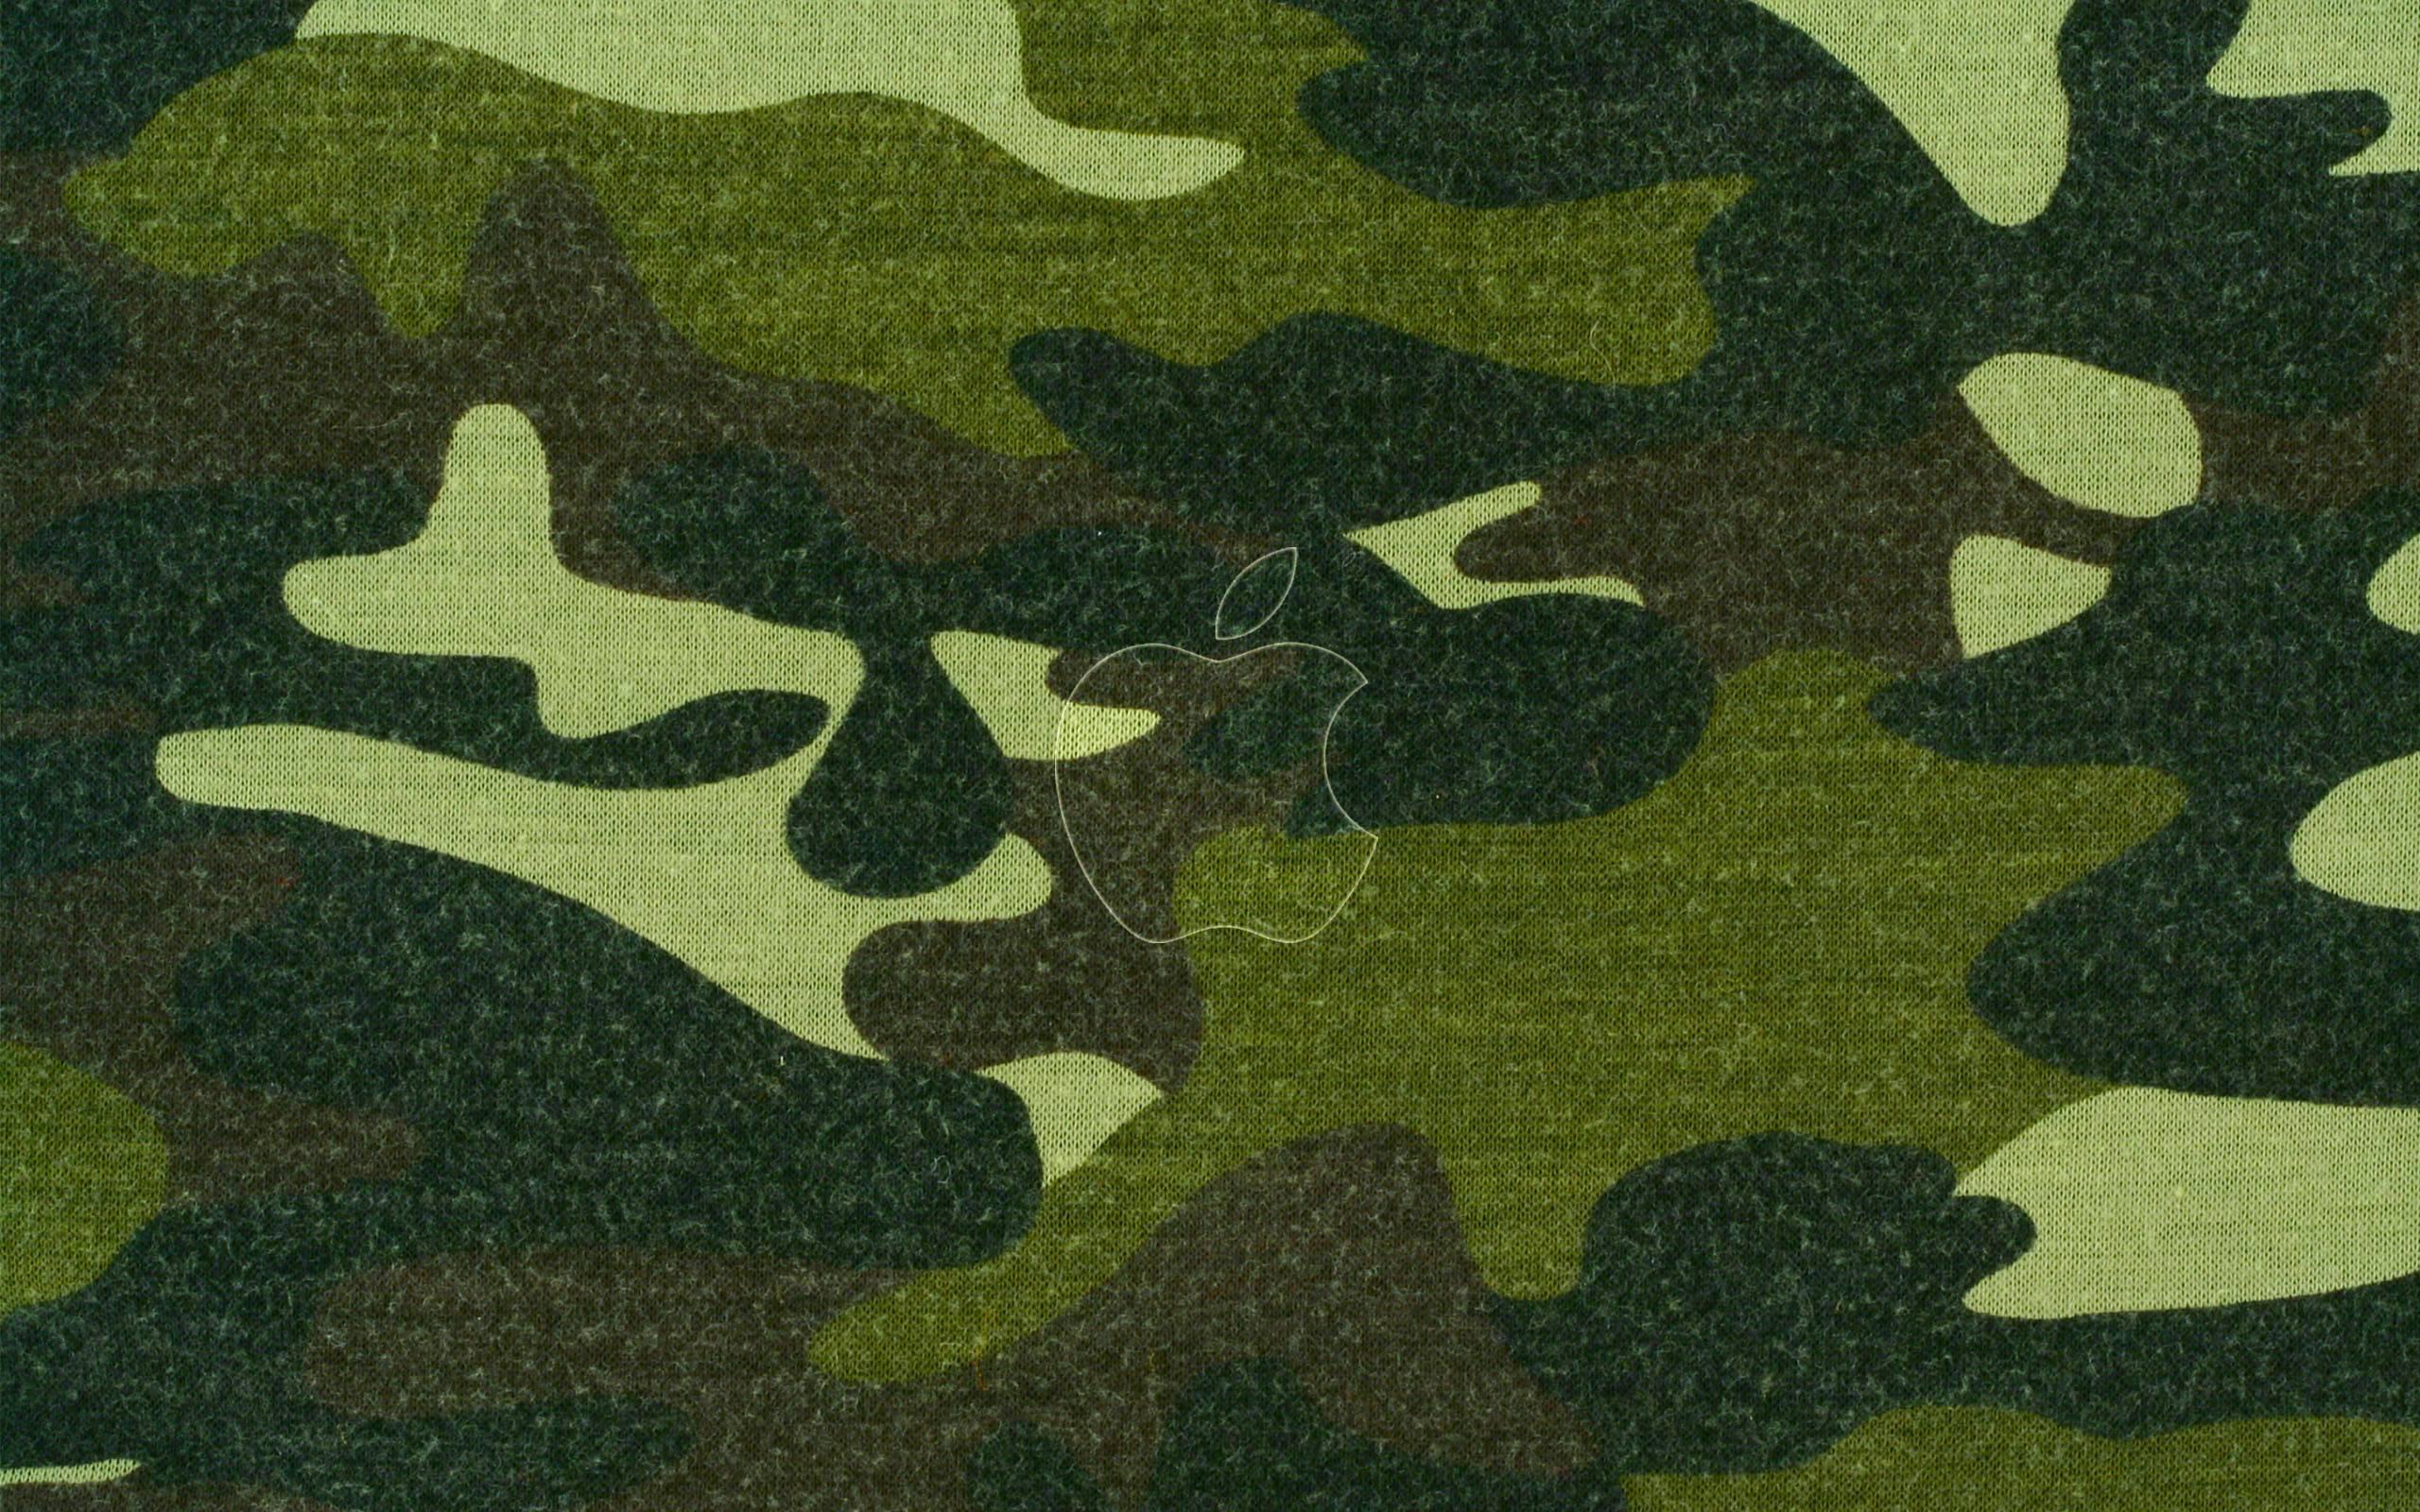 Хаки часть. Woodland Camouflage 4r. Камуфляж фон. Камуфляж хаки. Защитный цвет камуфляж.